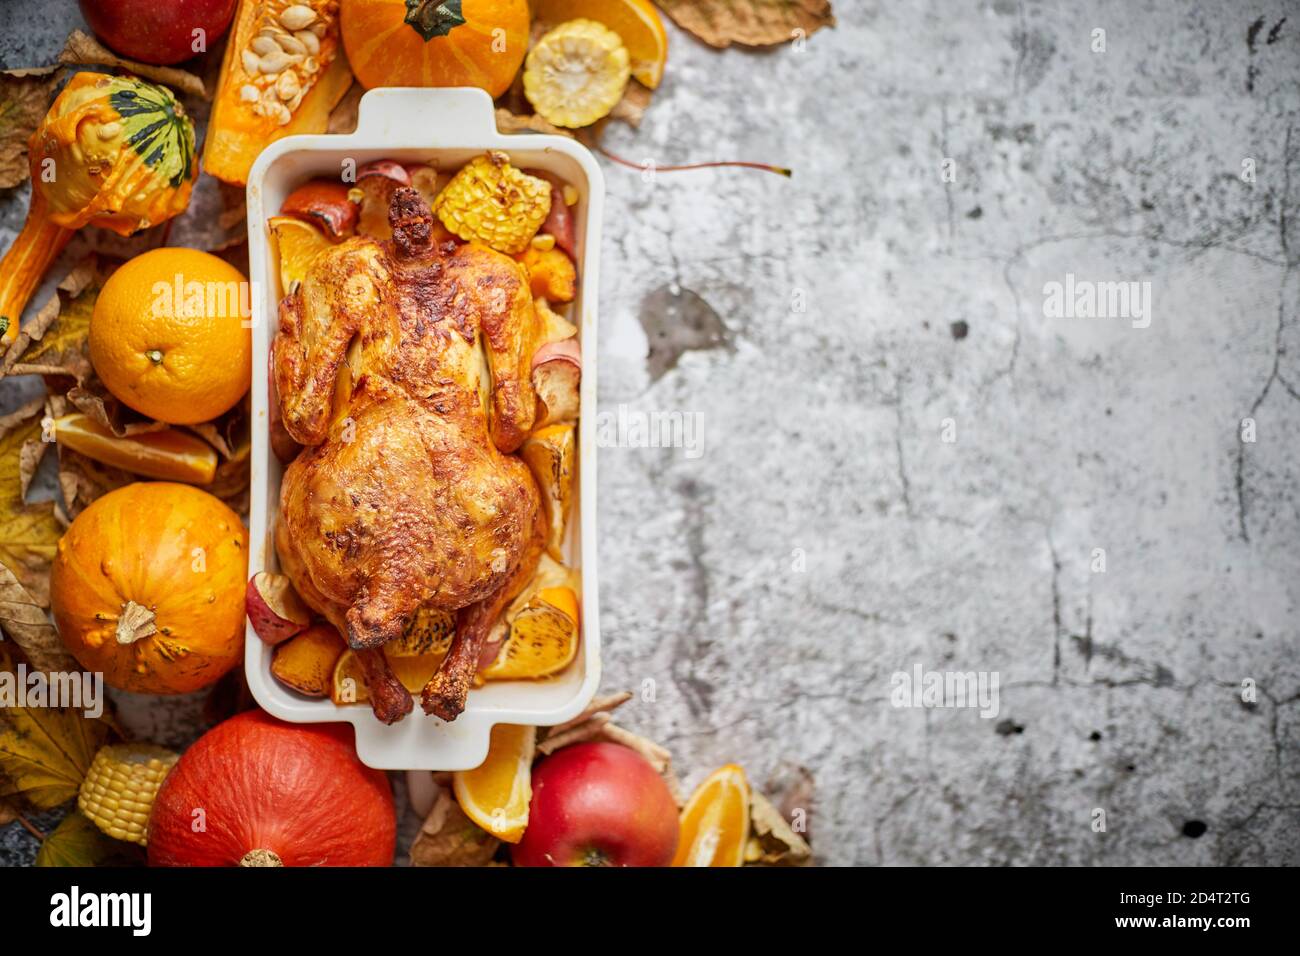 Table de Thanksgiving avec poulet entier rôti ou dinde, citrouille, pommes de terre cuites au four, châtaignes et légumes d'automne grillés. Vue de dessus, au-dessus de la tête. Banque D'Images